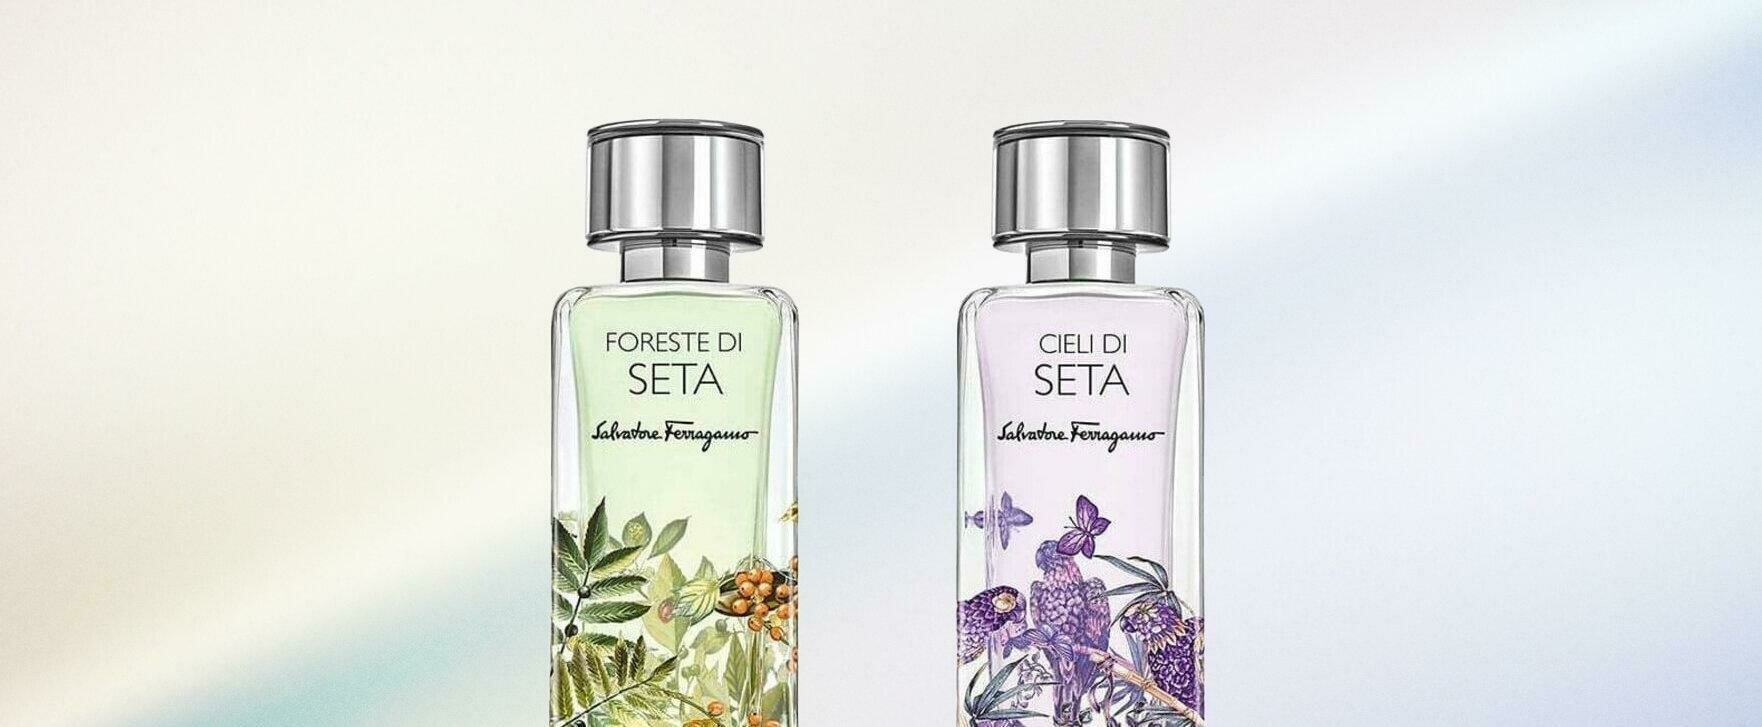 A Tribute to Silk: Salvatore Ferragamo's New Unisex Fragrances Foreste di Seta and Cieli di Seta 